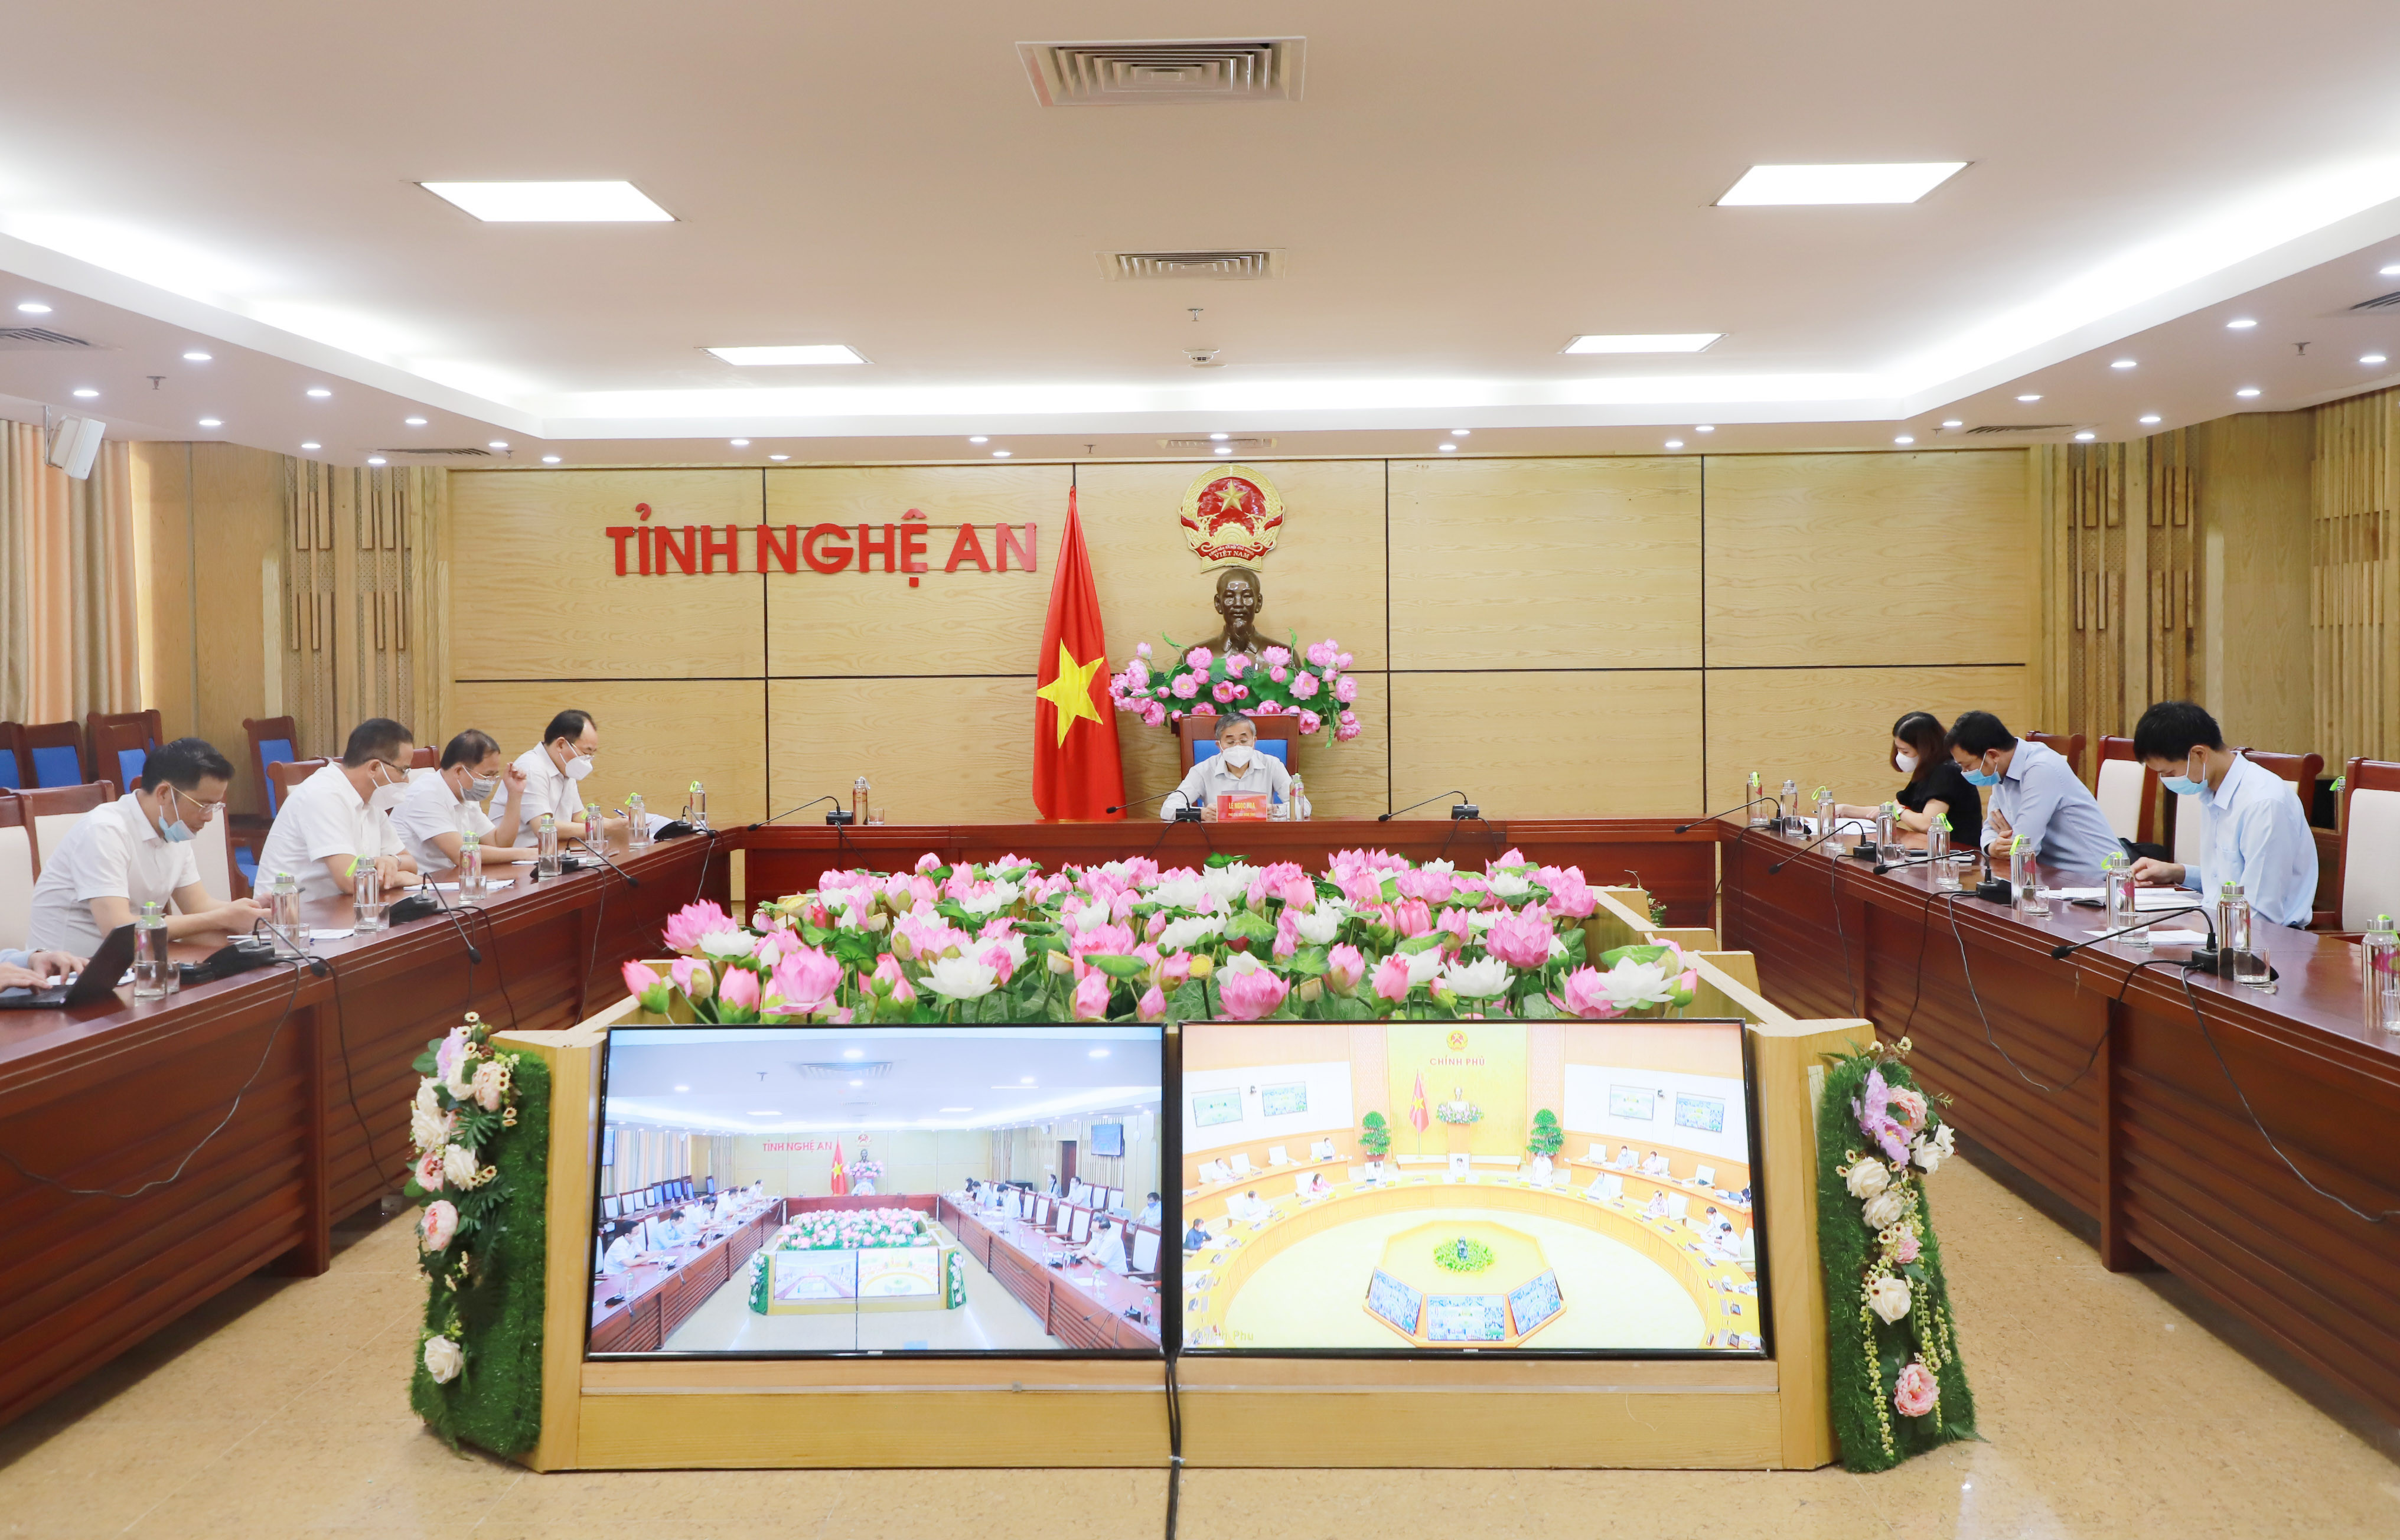 Tham dự hội nghị, tại điểm cầu tỉnh Nghệ An, đồng chí Lê Ngọc Hoa - Phó Chủ tịch UBND tỉnh chủ trì. Tham dự có lãnh đạo các sở, ngành, đại diện các chủ đầu tư KCN, doanh nghiệp.